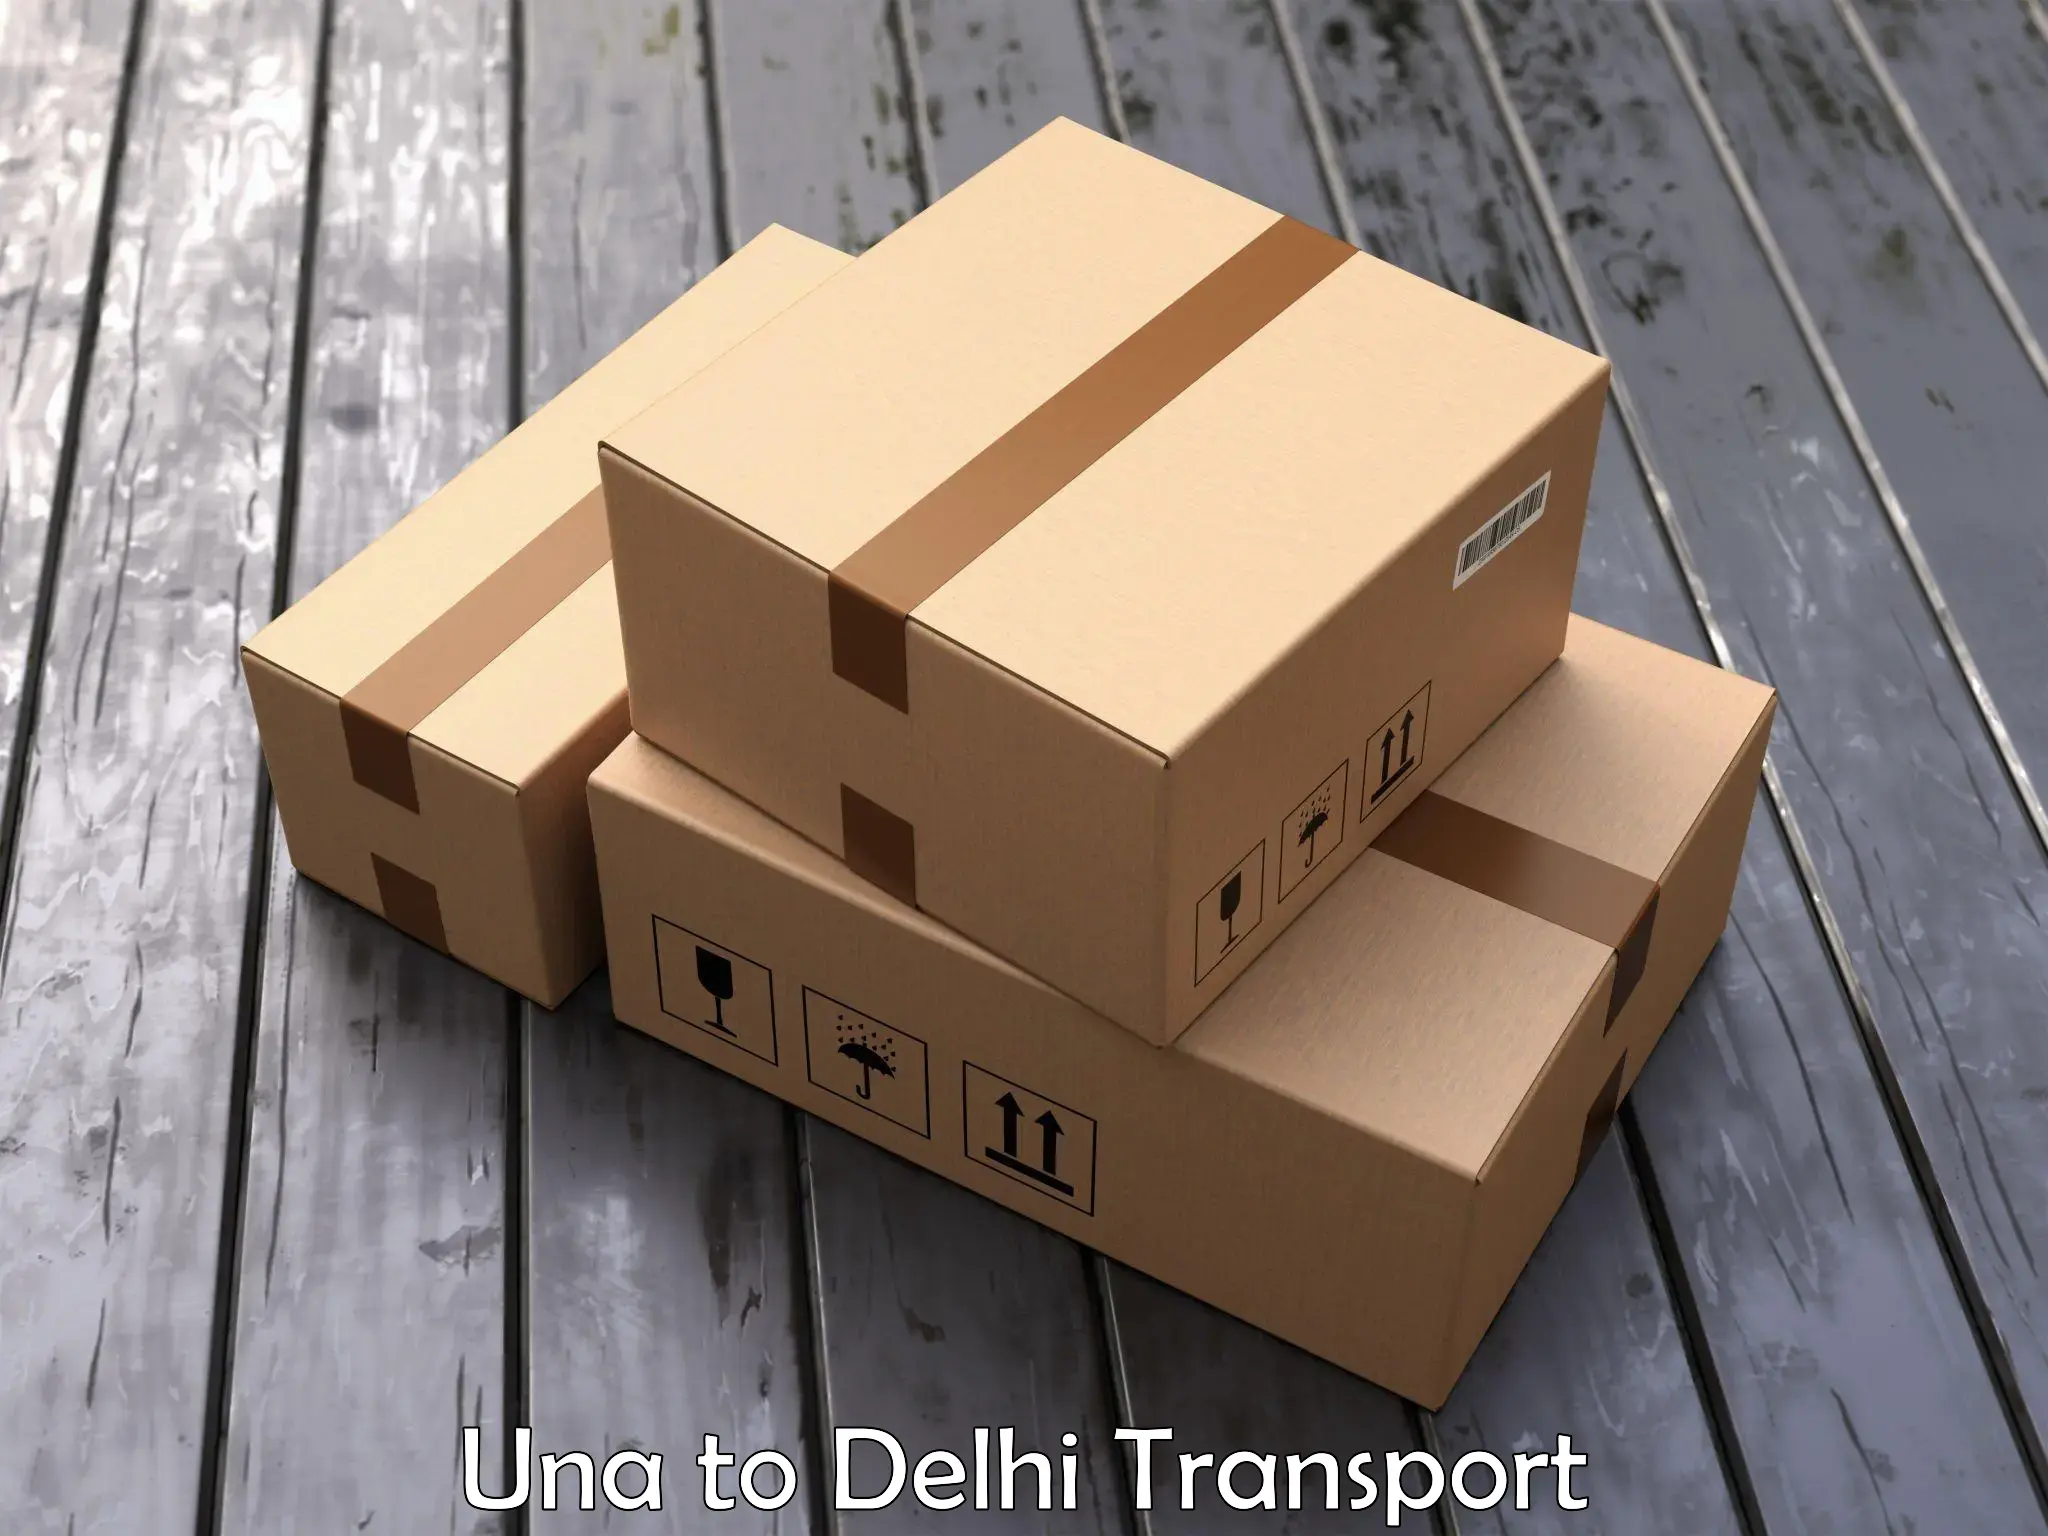 Commercial transport service Una to NIT Delhi